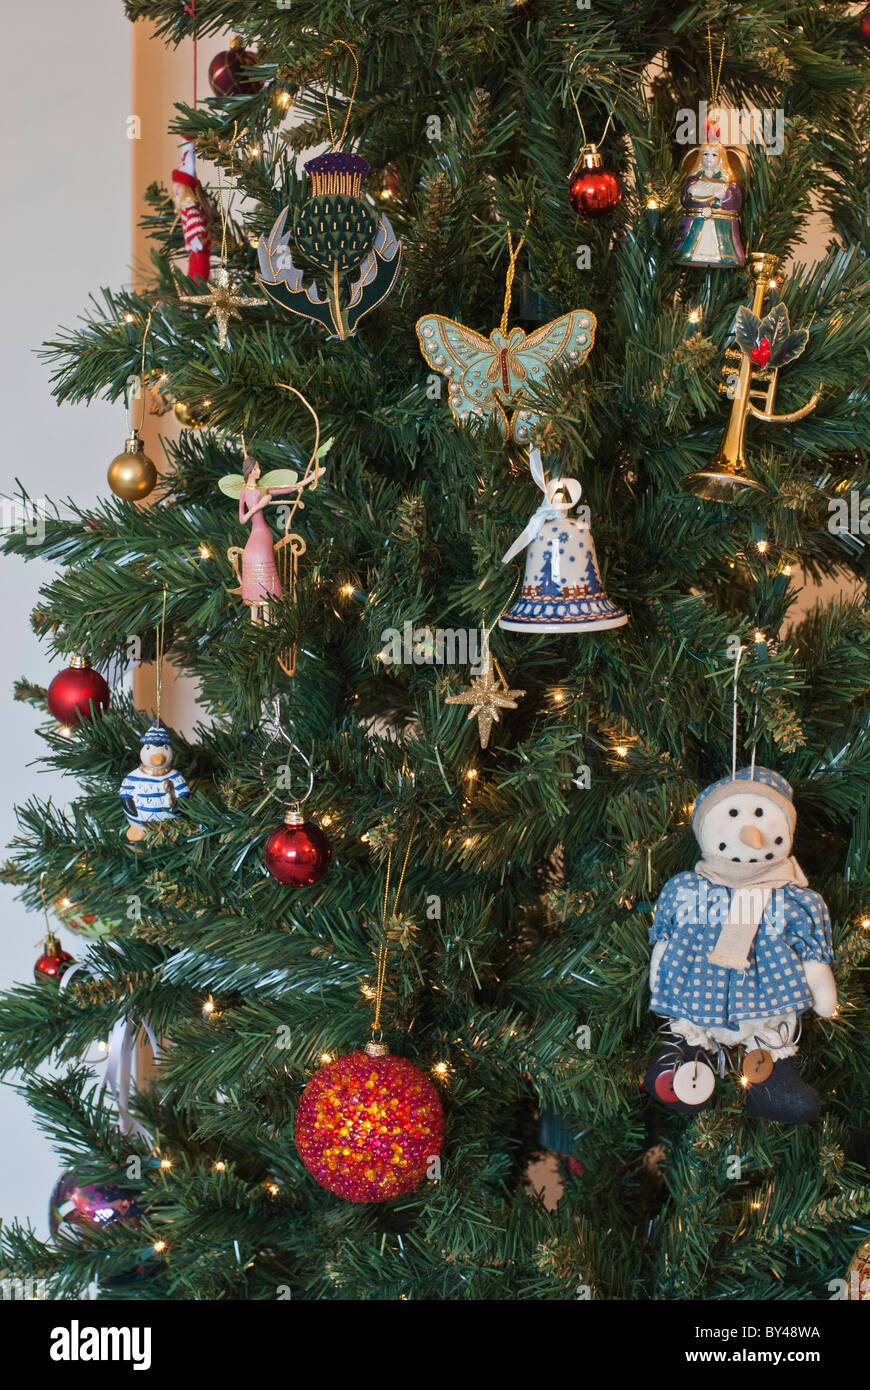 Dekorationen auf künstlicher Weihnachtsbaum. Umweltfreundlicher Weihnachtsbaum als Baum kann über viele Jahre verwendet werden. Stockfoto